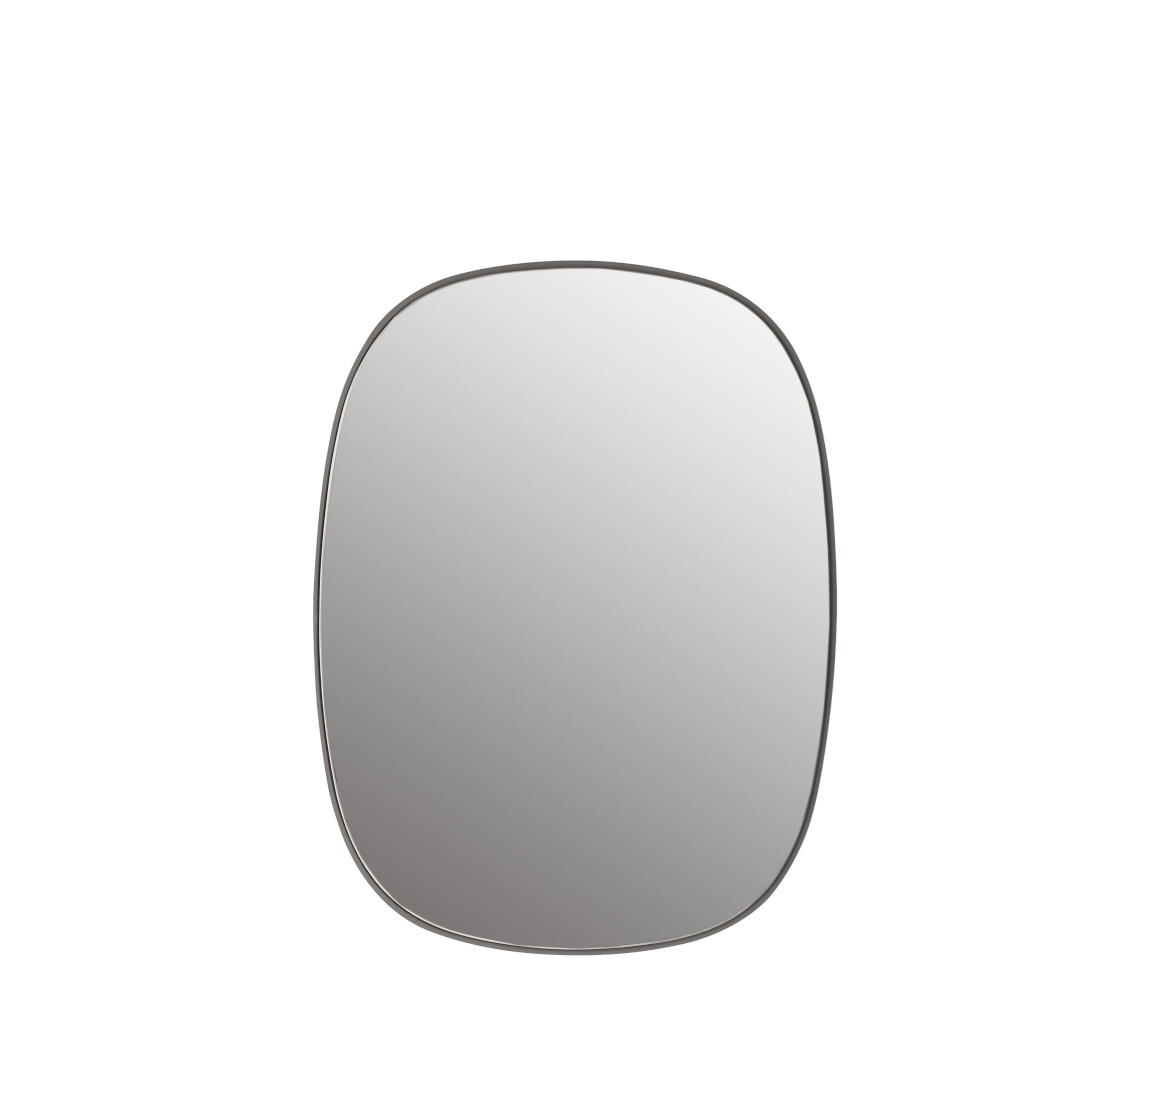 Framed Spiegel, small, grau / glasklar